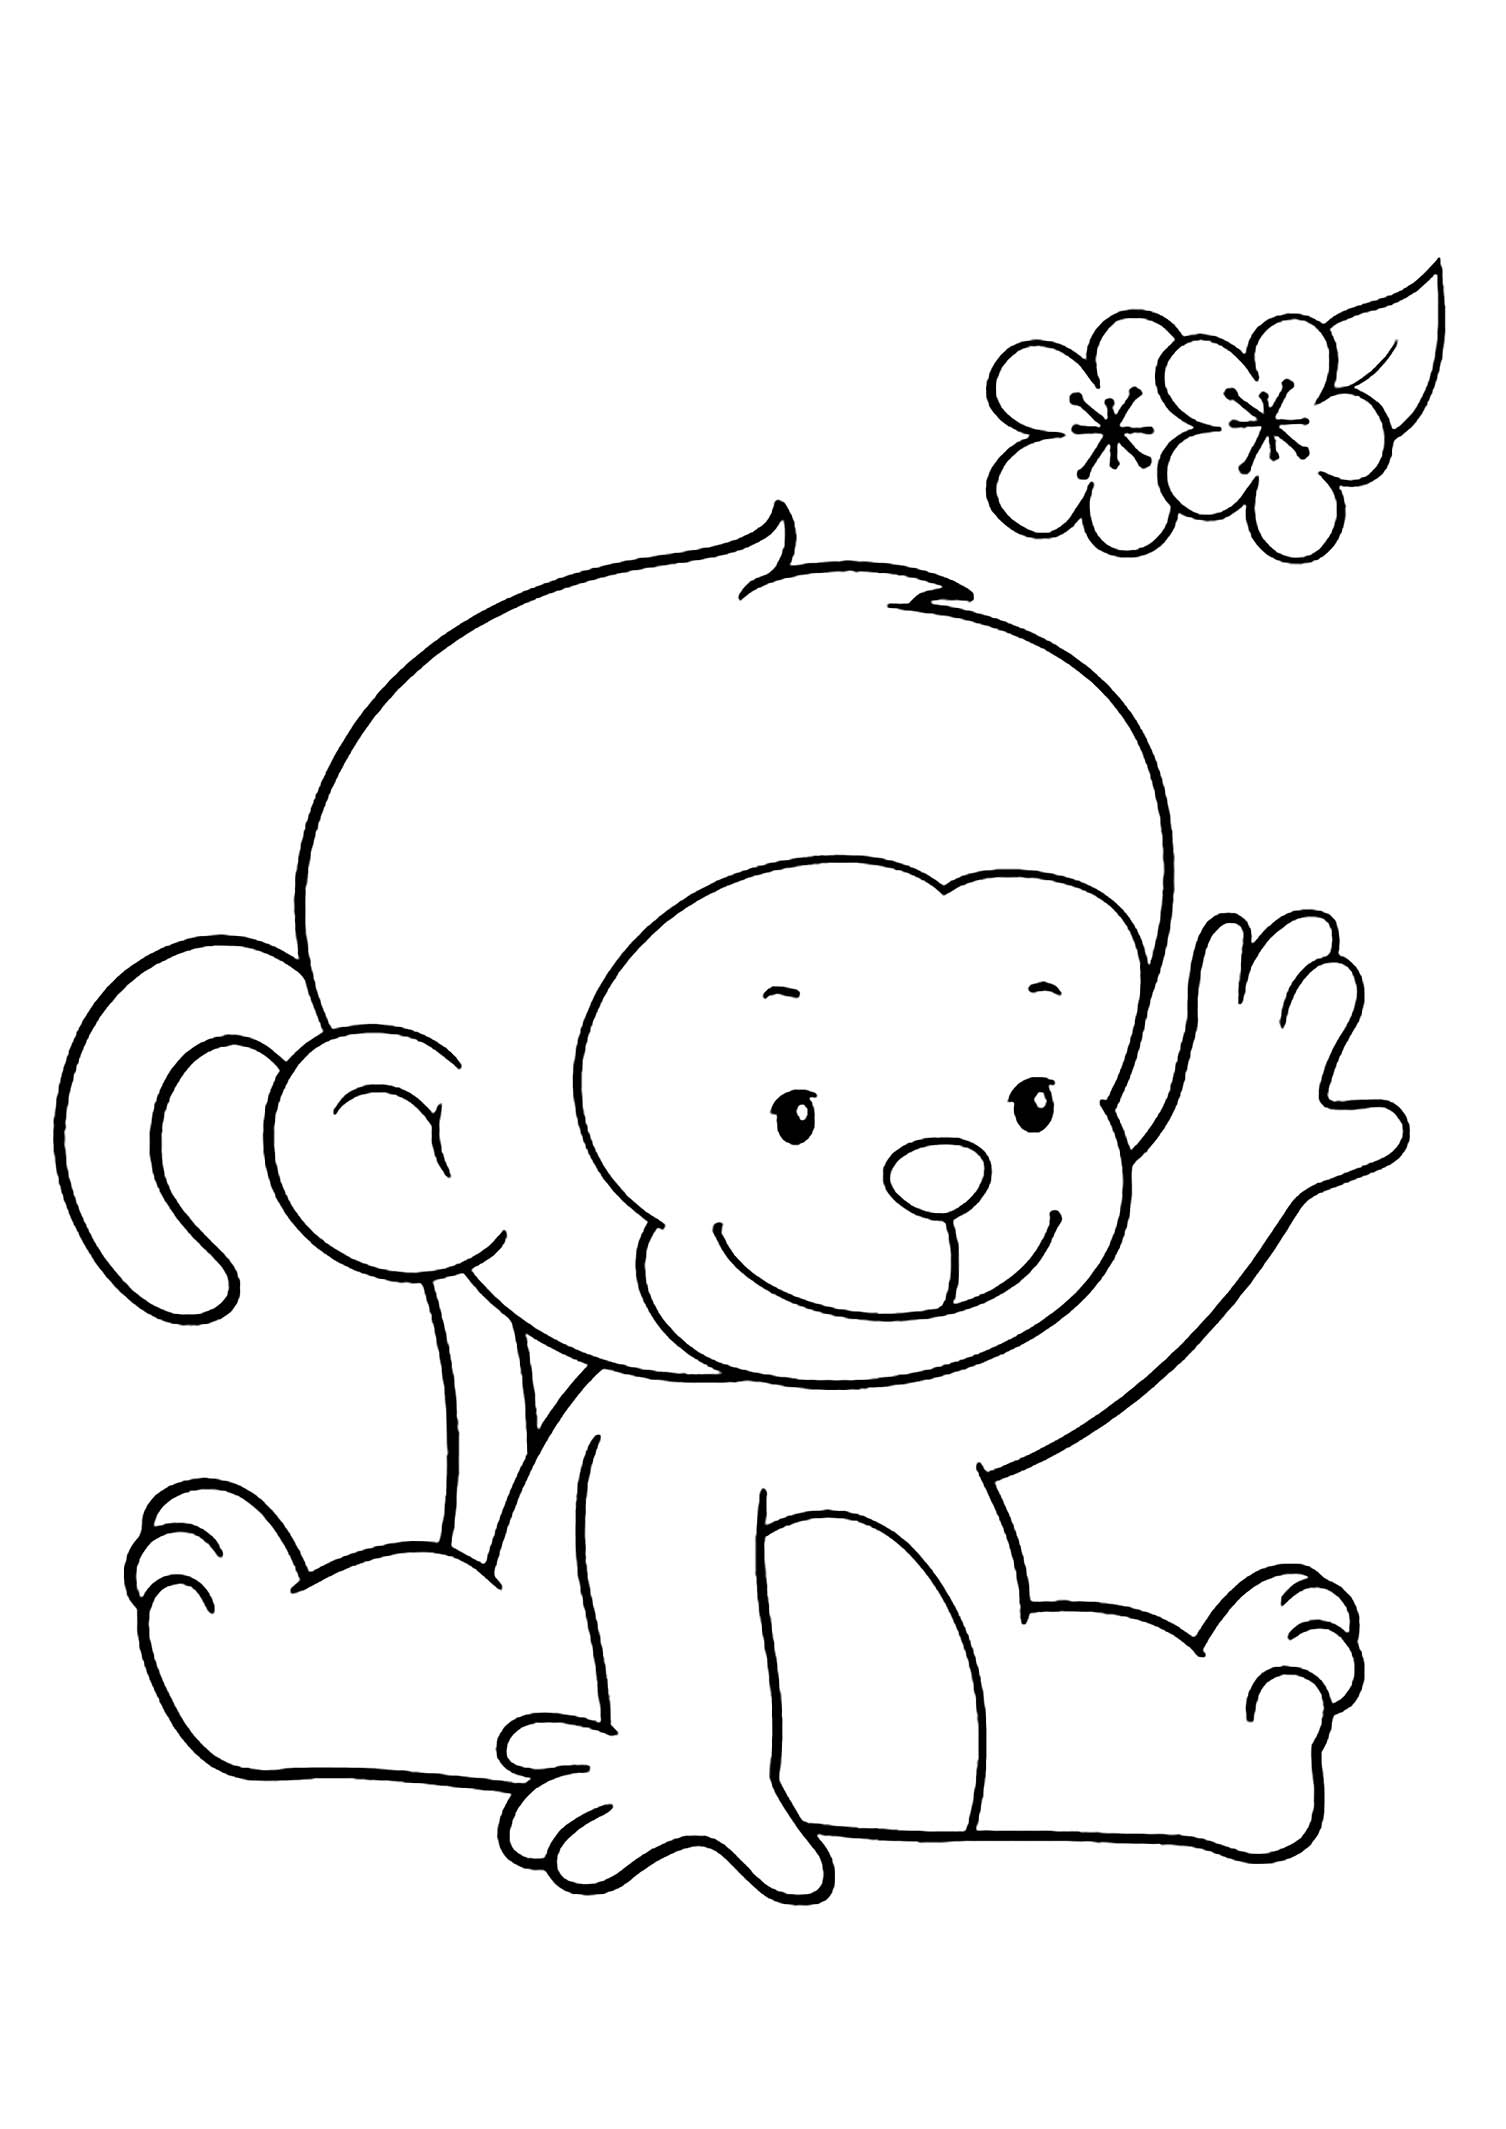 Macacos - Just Color Crianças : Páginas para colorir para crianças